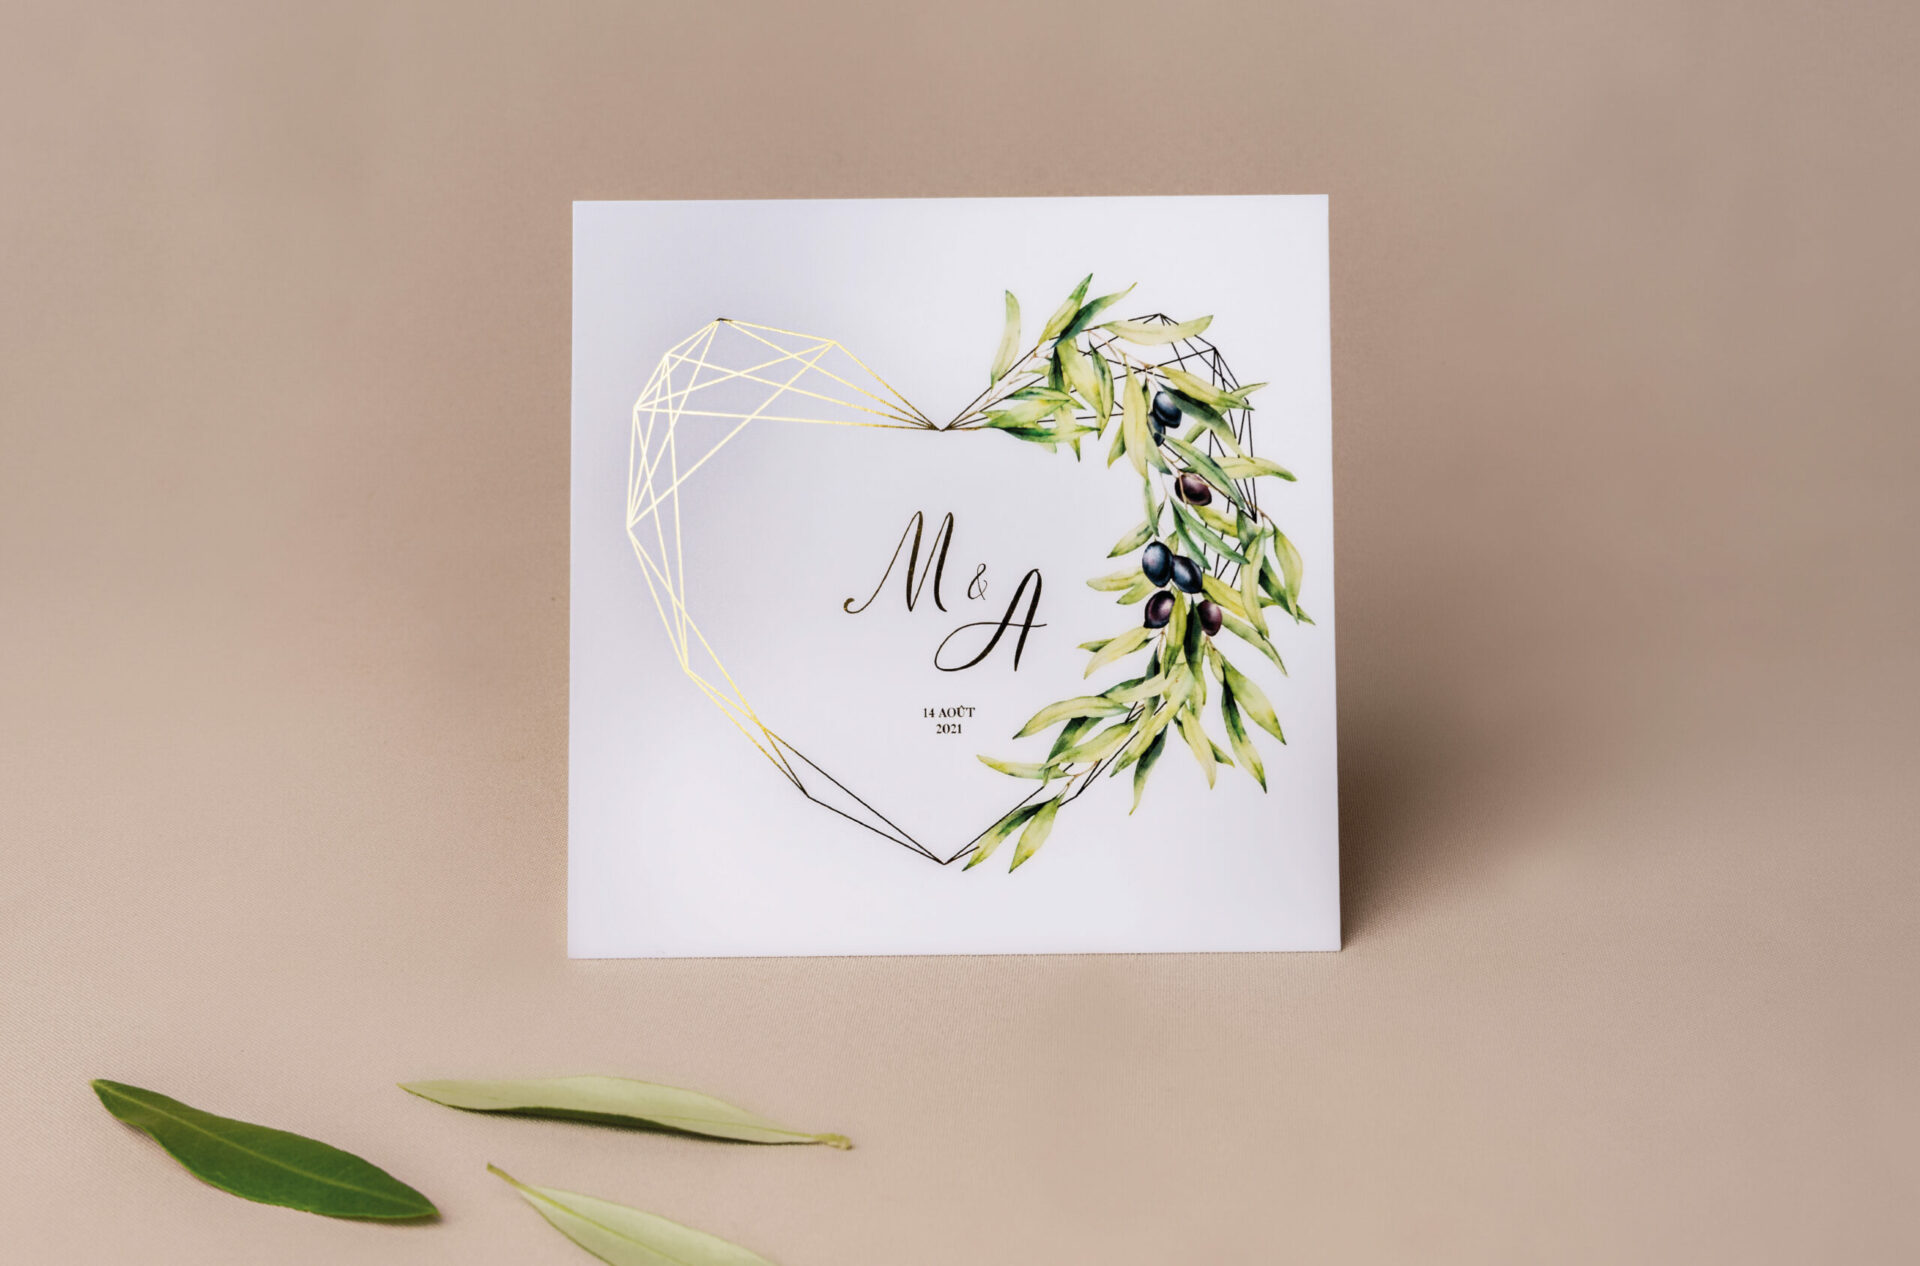 Convite de Casamento branco de estilo geométrico com ilustração de folhas de oliveira e com envelope verde e lacre dourado